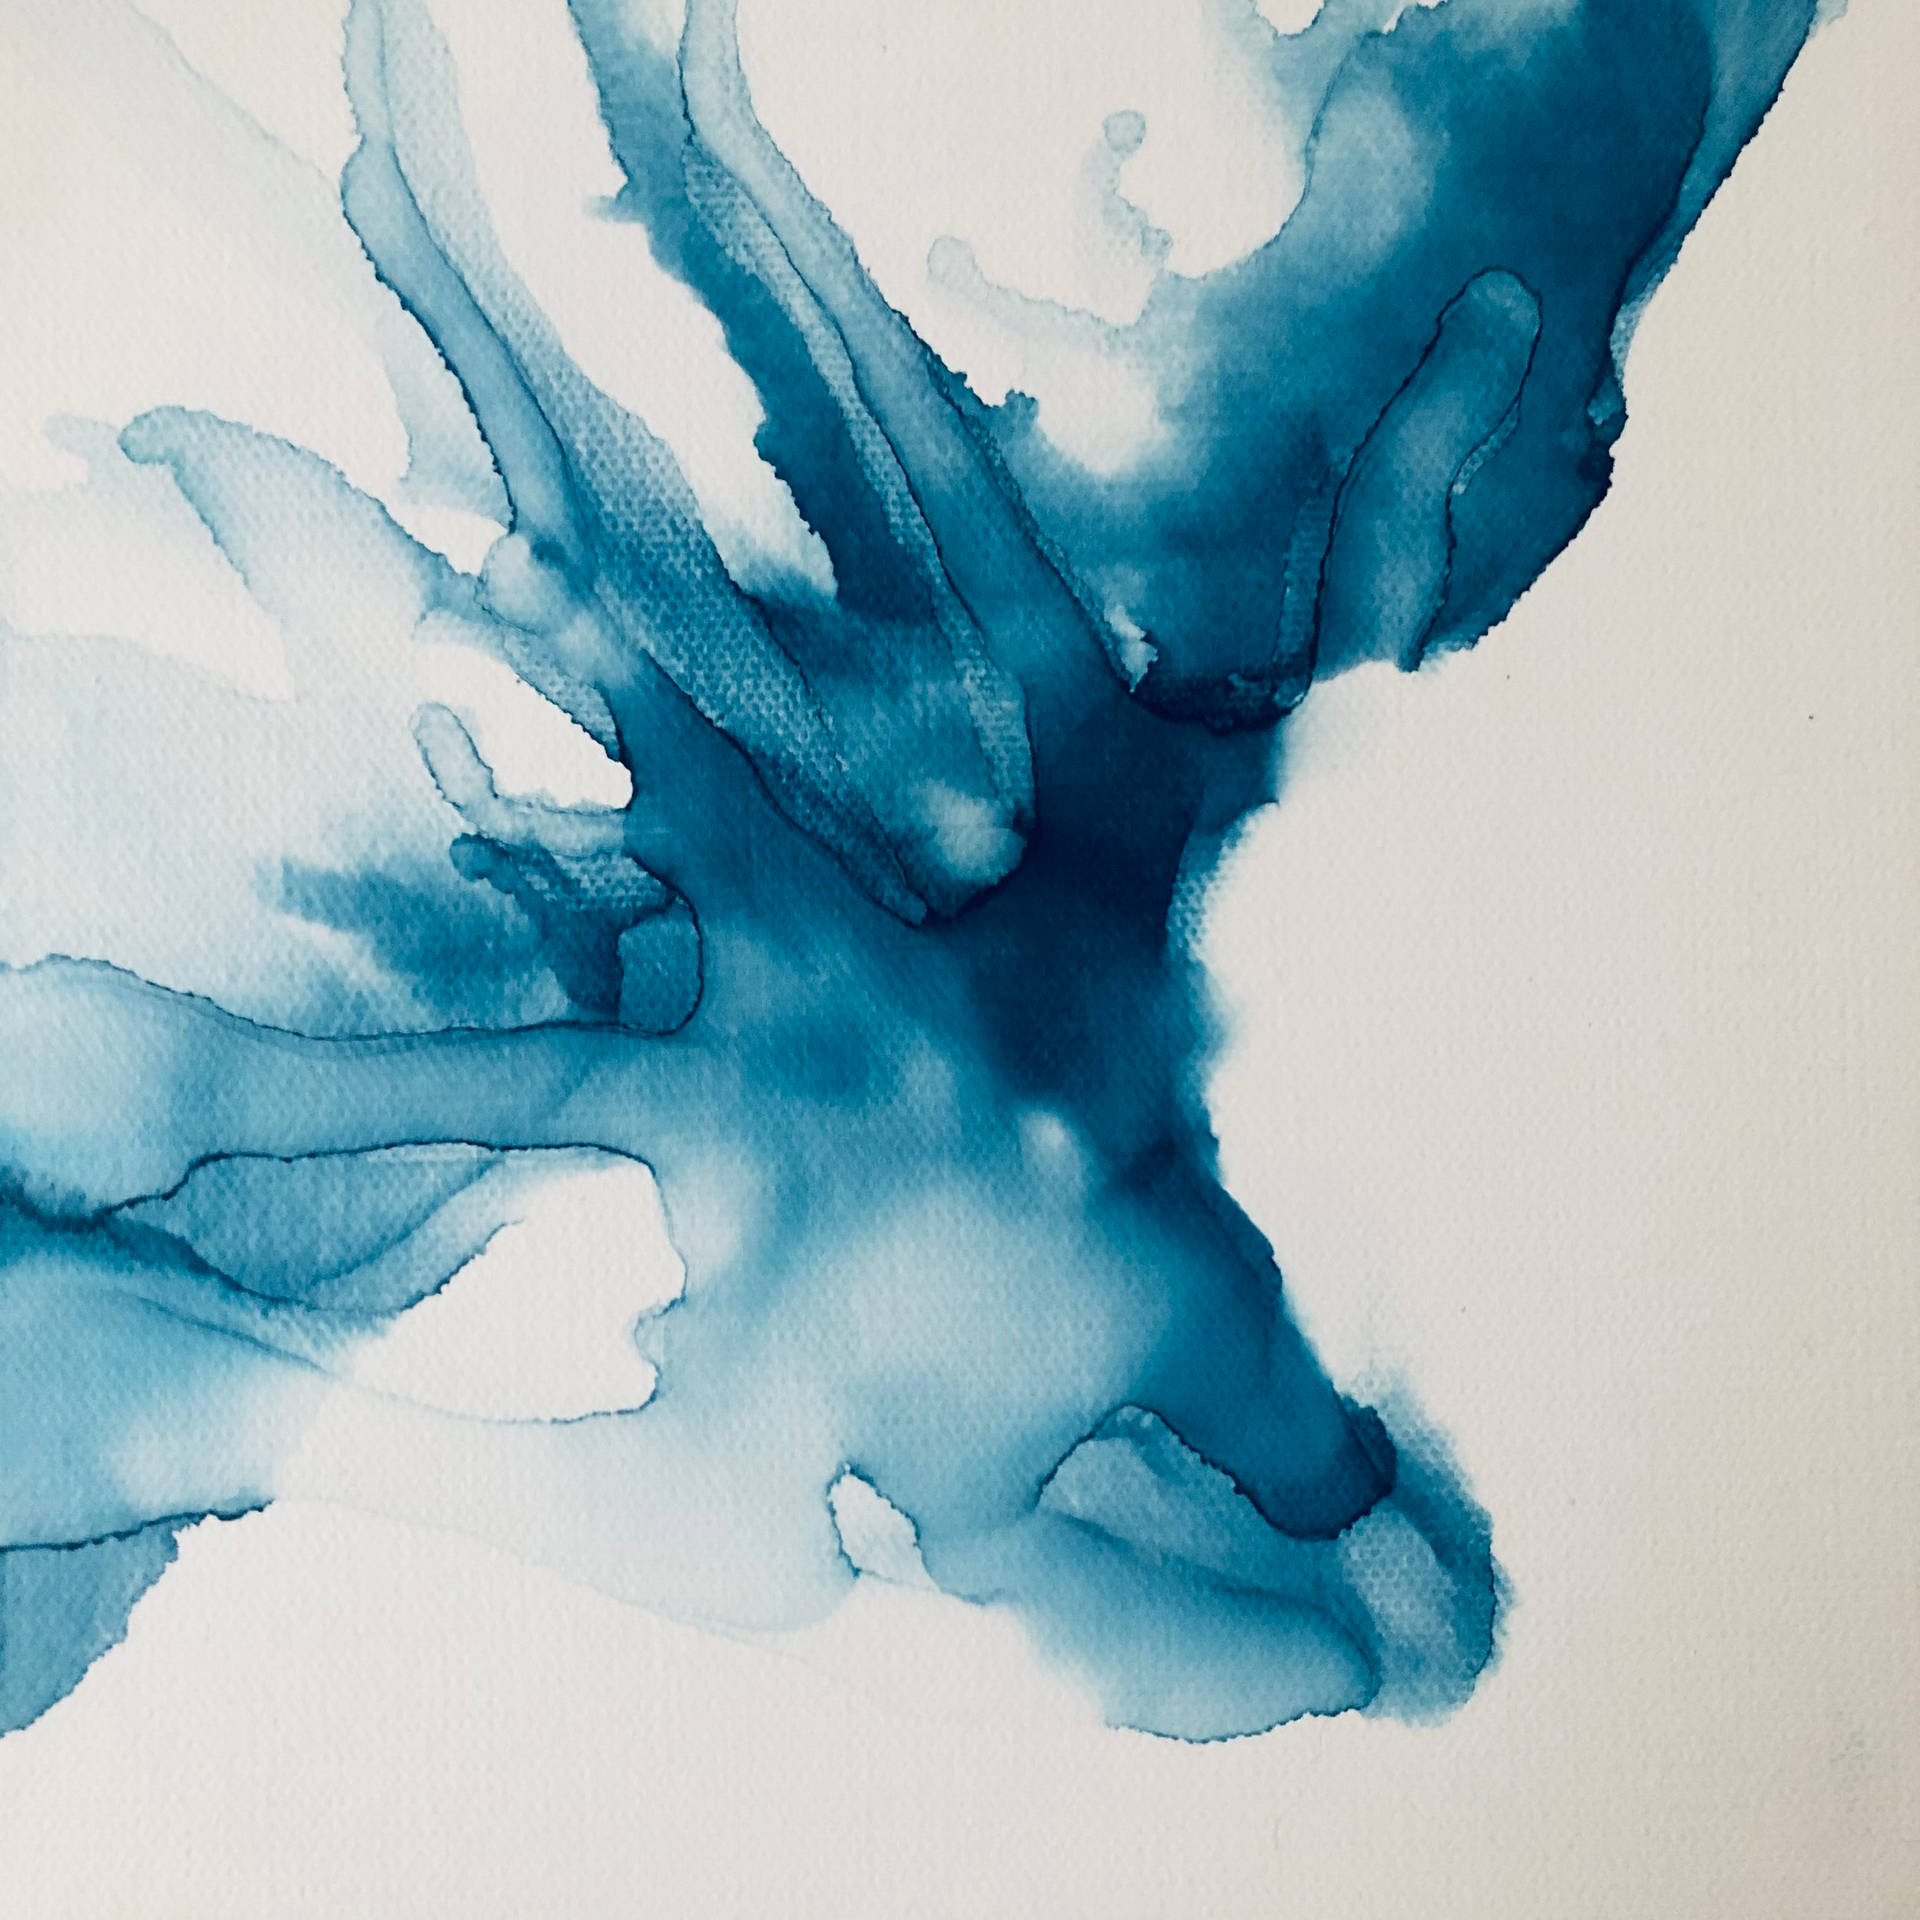 Enblå Akvarellmålning På Vitt Papper Wallpaper